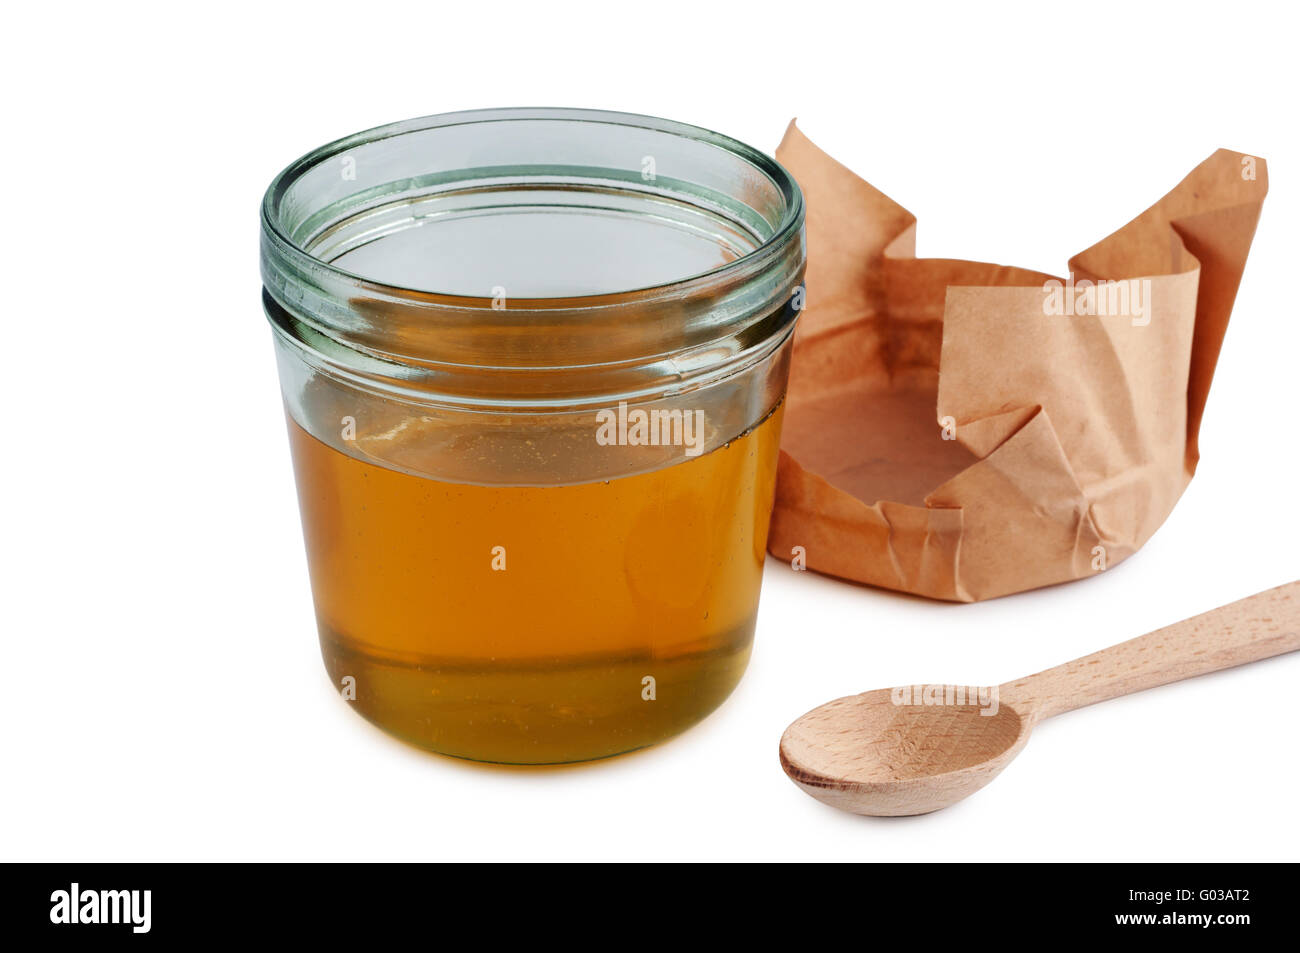 En tarro de miel con una cuchara de madera. Cerrar aislados. Foto de stock